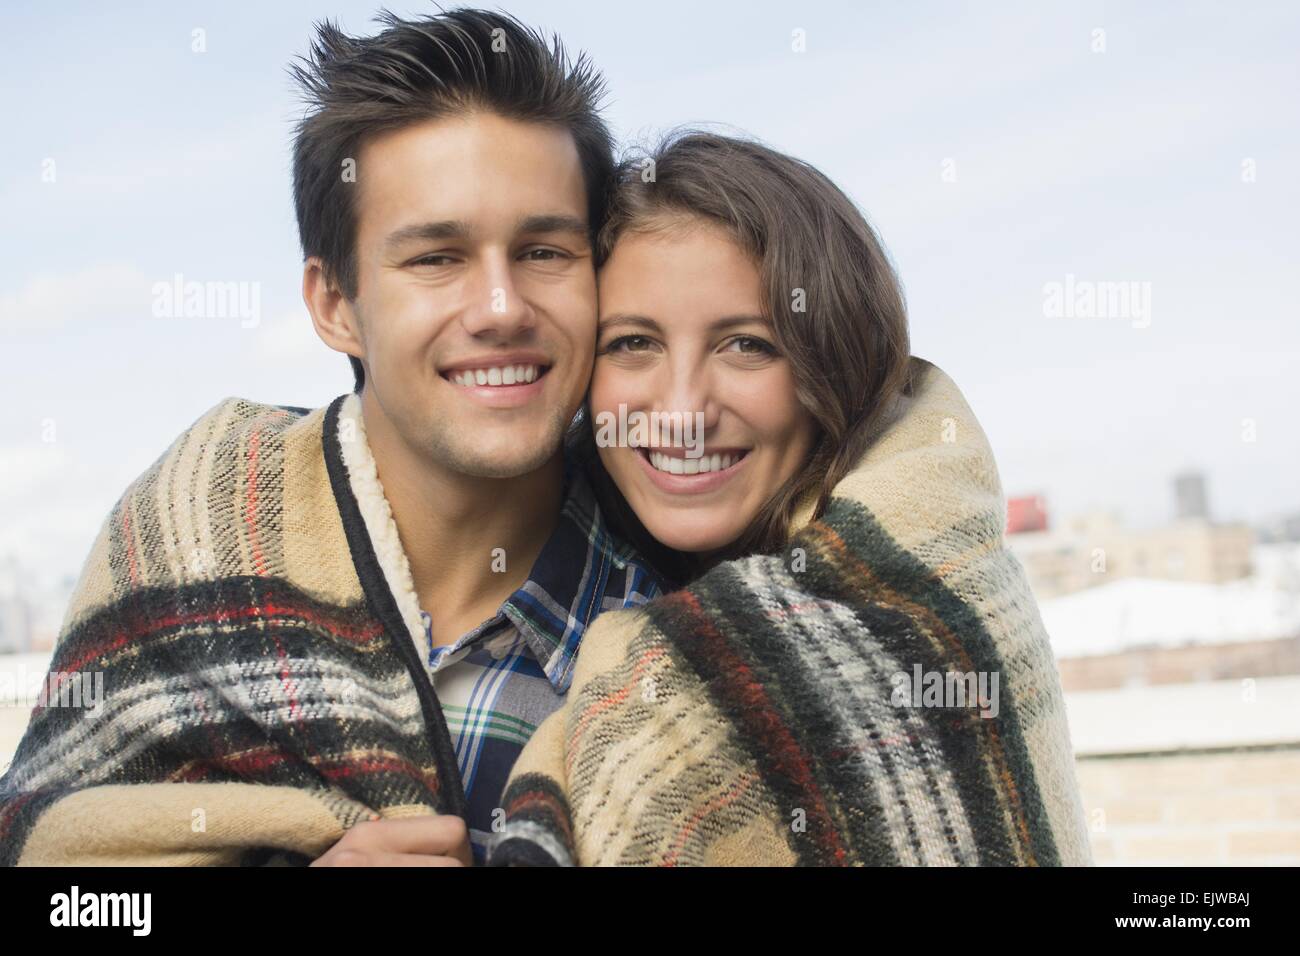 Porträt eines jungen Paares, Brooklyn, New York State, New York City, USA in Decke gehüllt Stockfoto